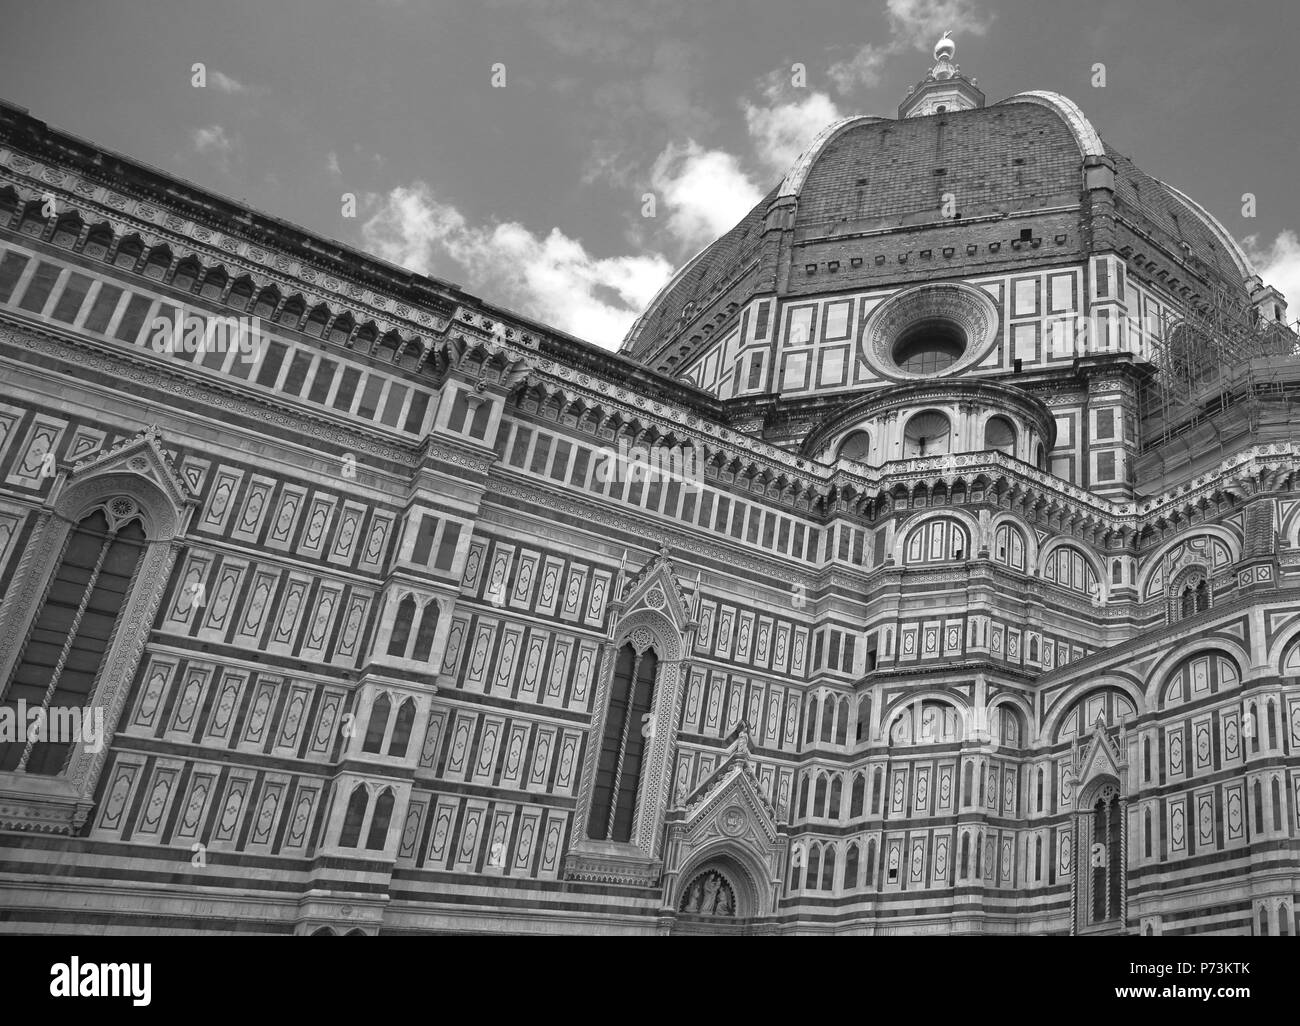 Le duomo ou cathédrale de Santa Maria del Fiore et son célèbre Dôme de Brunelleschi, dans le centre de Florence Italie Banque D'Images